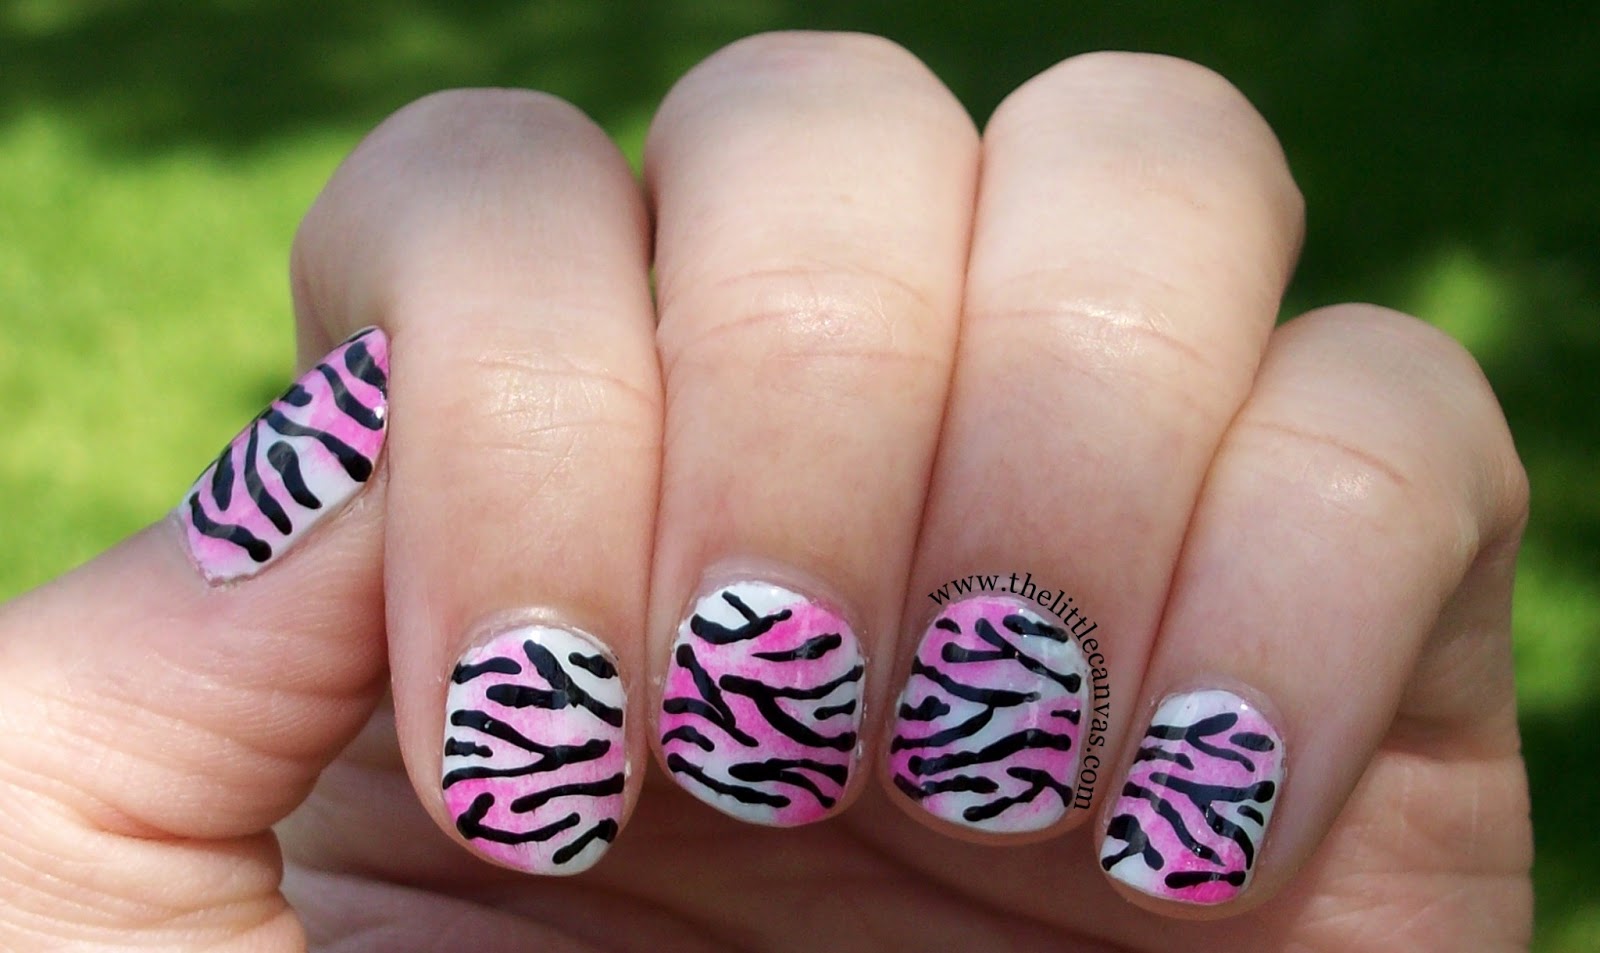 9. Zebra Nail Art with Gel Polish - wide 11